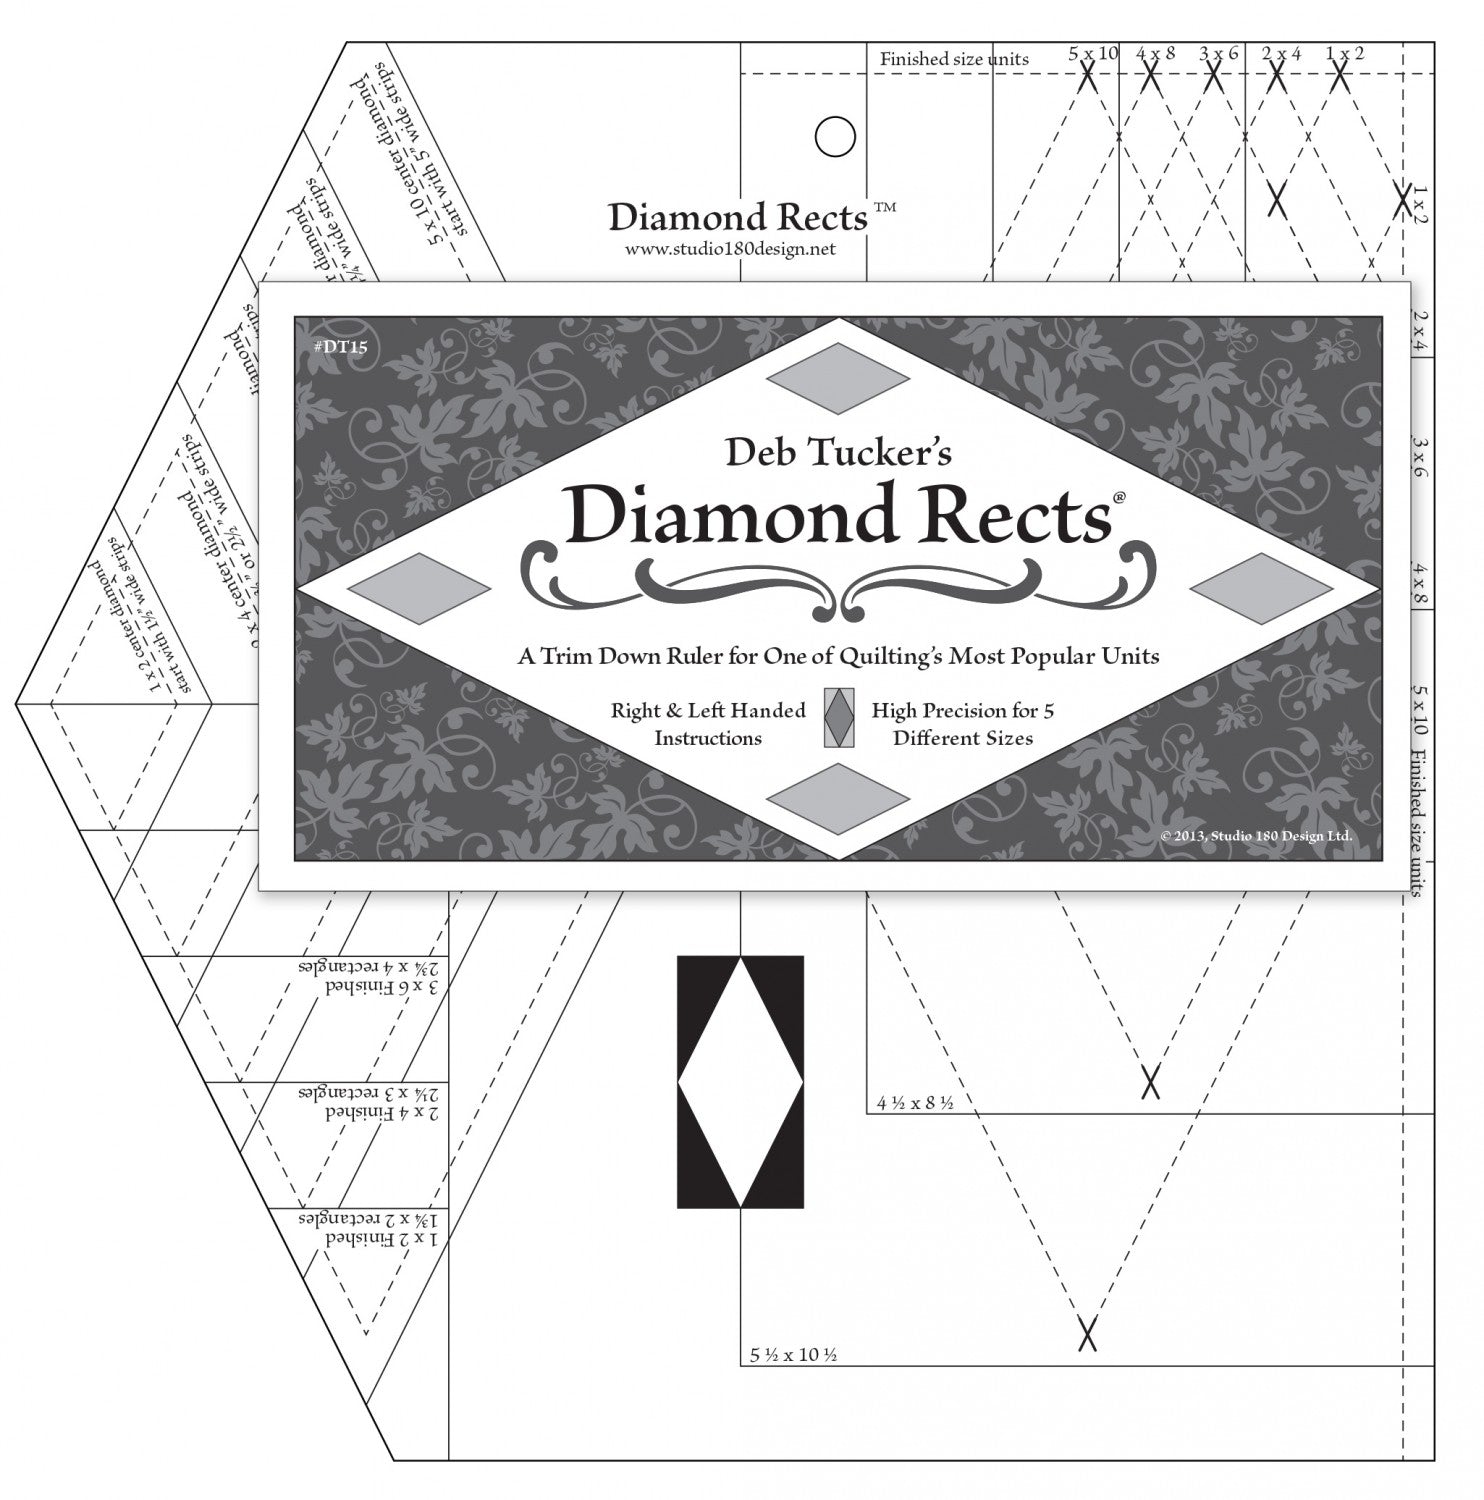 Diamond Rects - UDT15 - Studio 180 Design